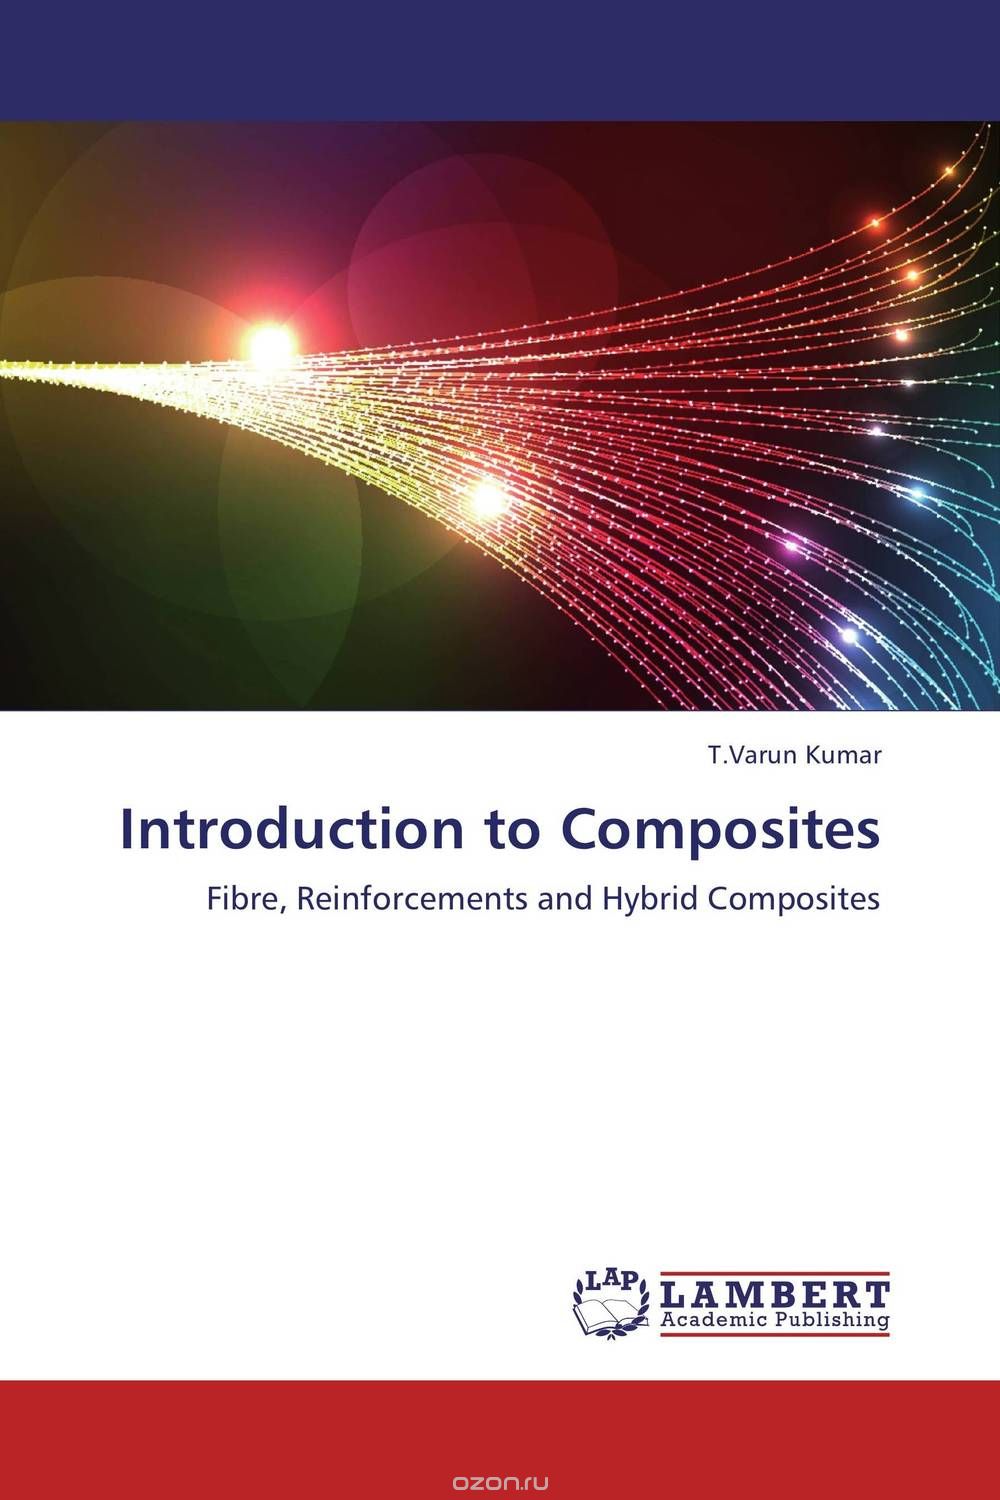 Скачать книгу "Introduction to Composites"